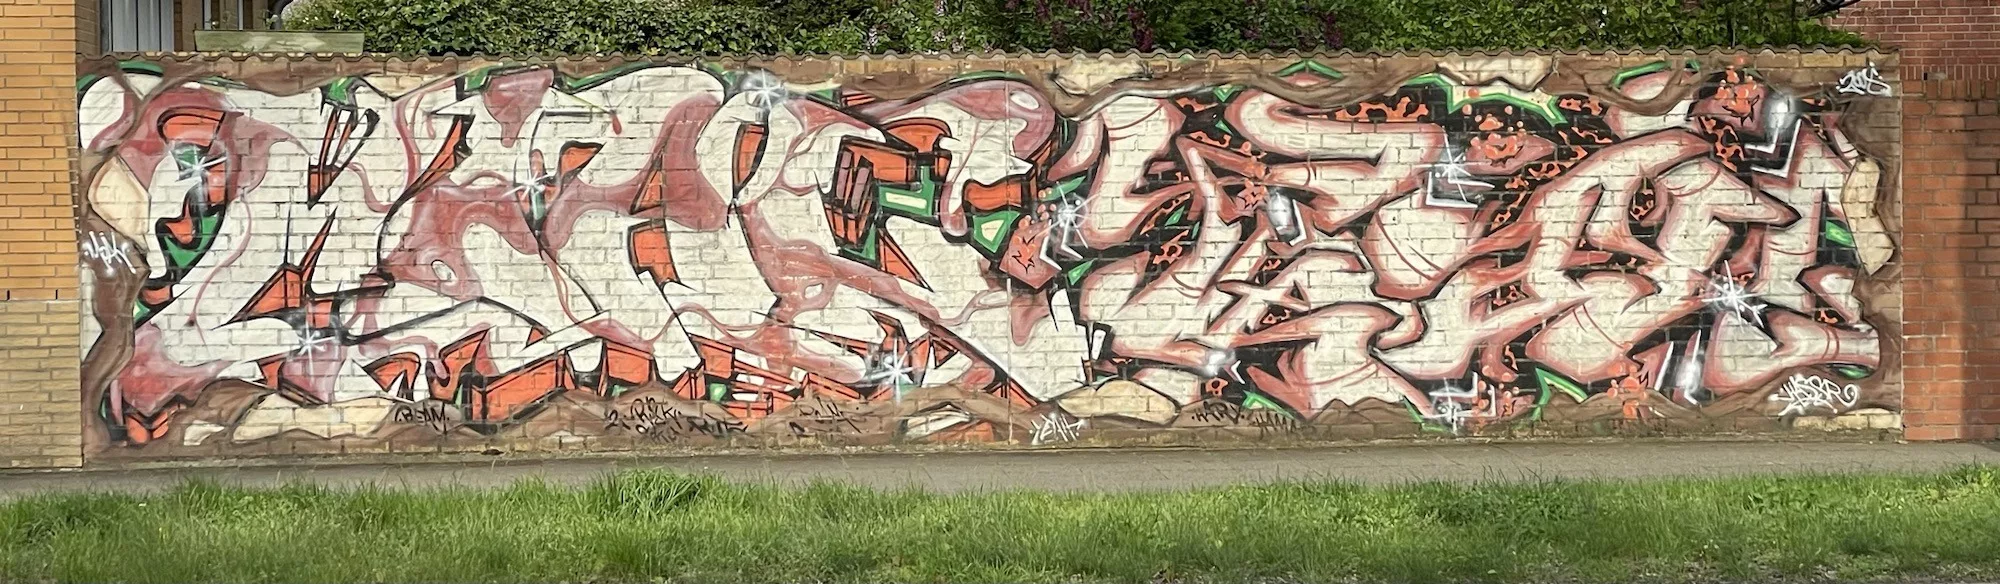 Breite aus roten Ziegeln gemauerte Mauer mit weißem Graffitischriftzug über die gesamte Mauer entlang.